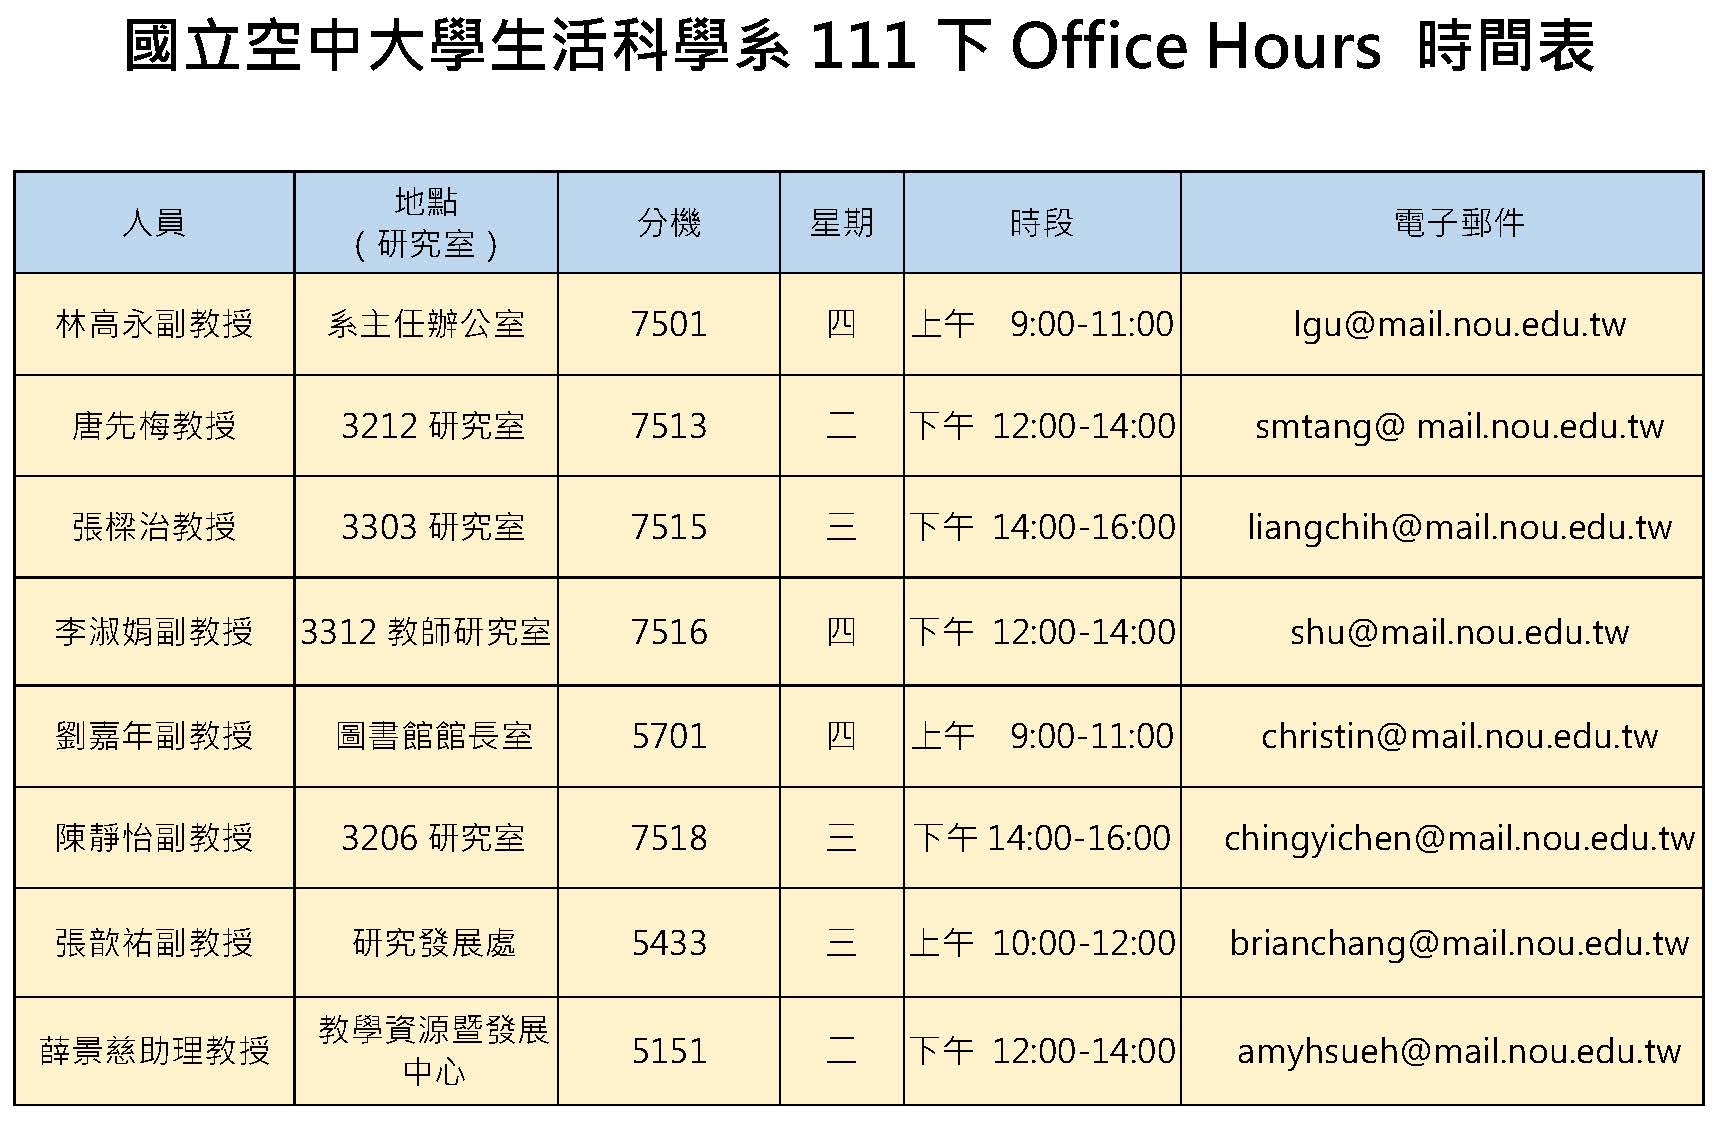 生活科學系111下Office Hours 時間表